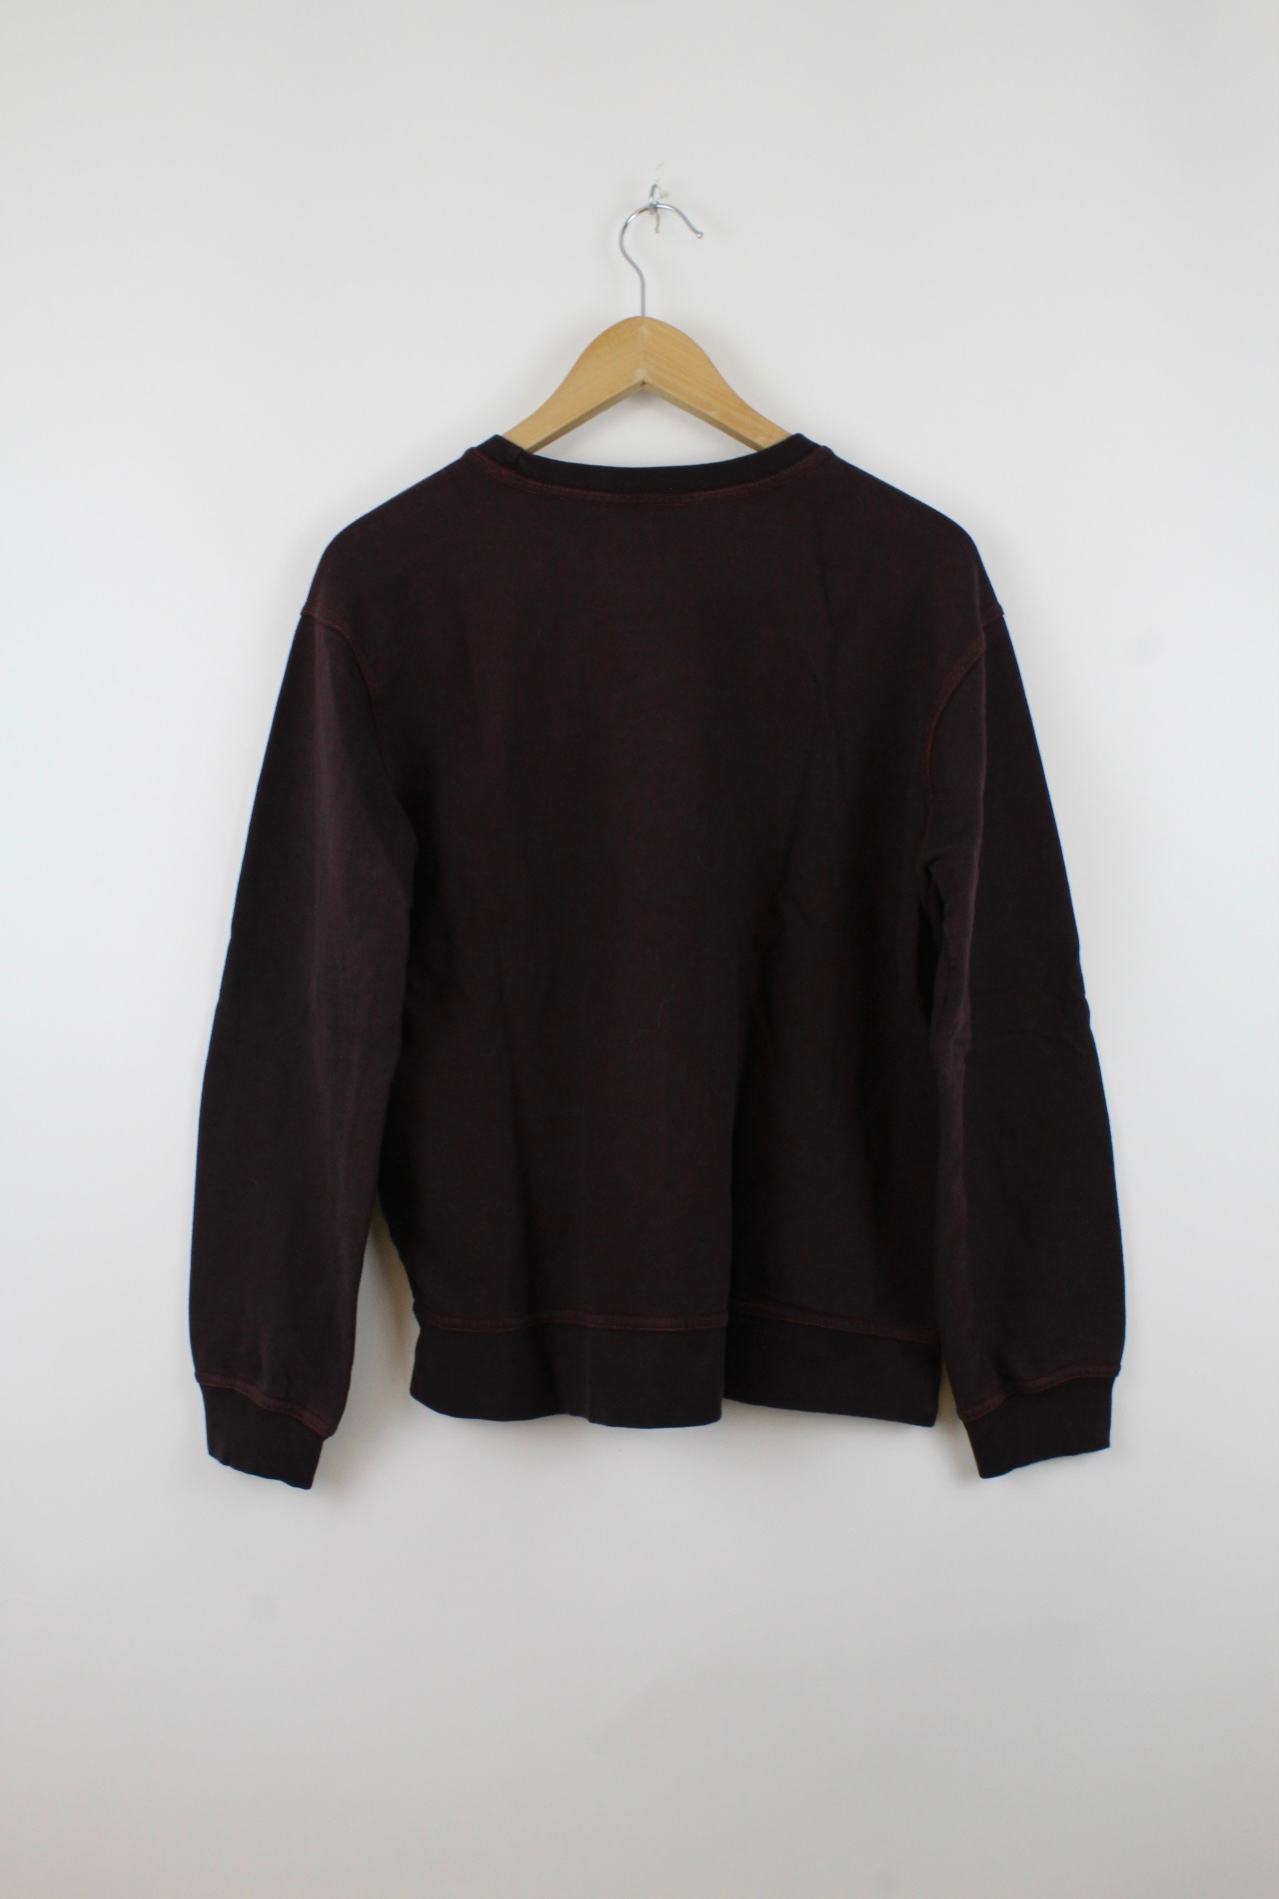 Vintage USA Sweater Schwarz - M